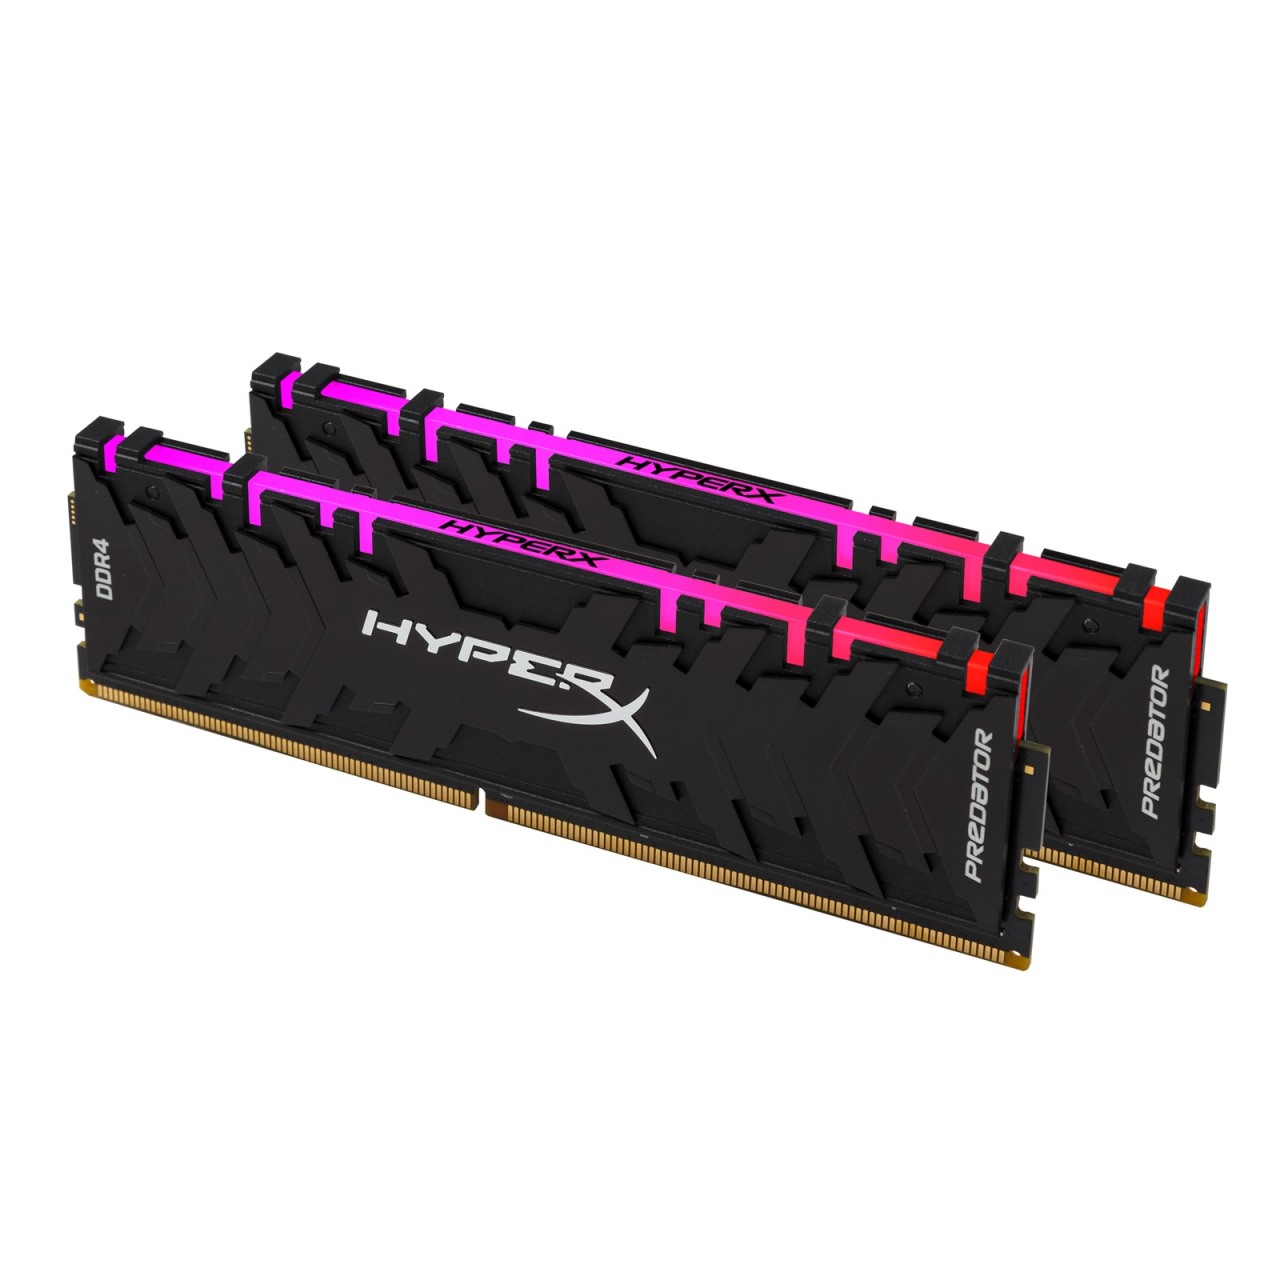 HyperX Predator 8GB DDR4 3200MHz RGB